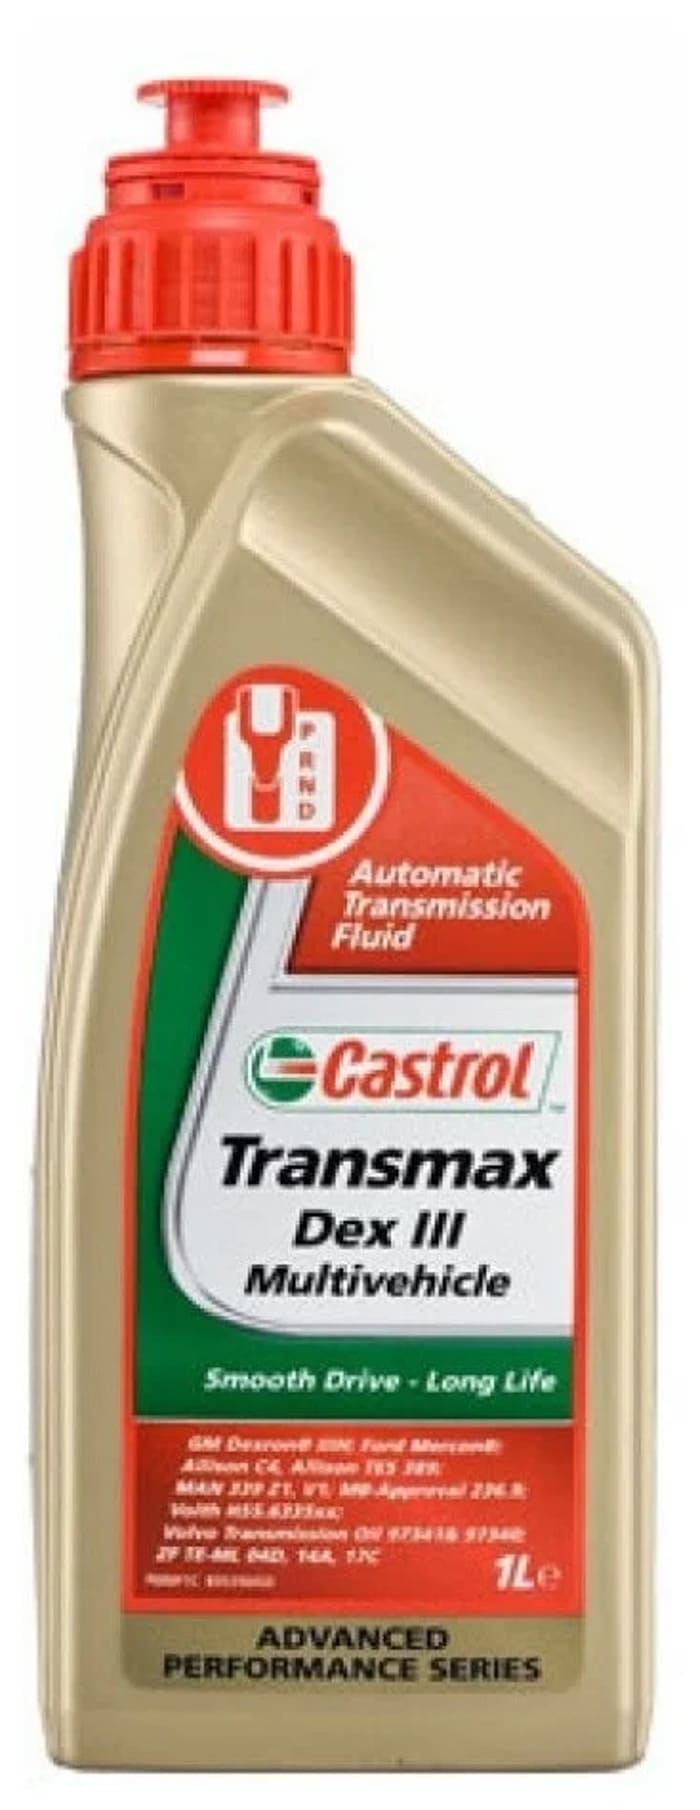 Atf transmax. Castrol Transmax ATF Dex/Merc Multivehicle 1л. Castrol Transmax Dex III Multivehicle ATF. 15dd2c масло трансмиссионное Castrol Transmax ATF Dex/Merc Multivehicle 1 л 15dd2c. Масло трансмиссионное Castrol Dex 2.